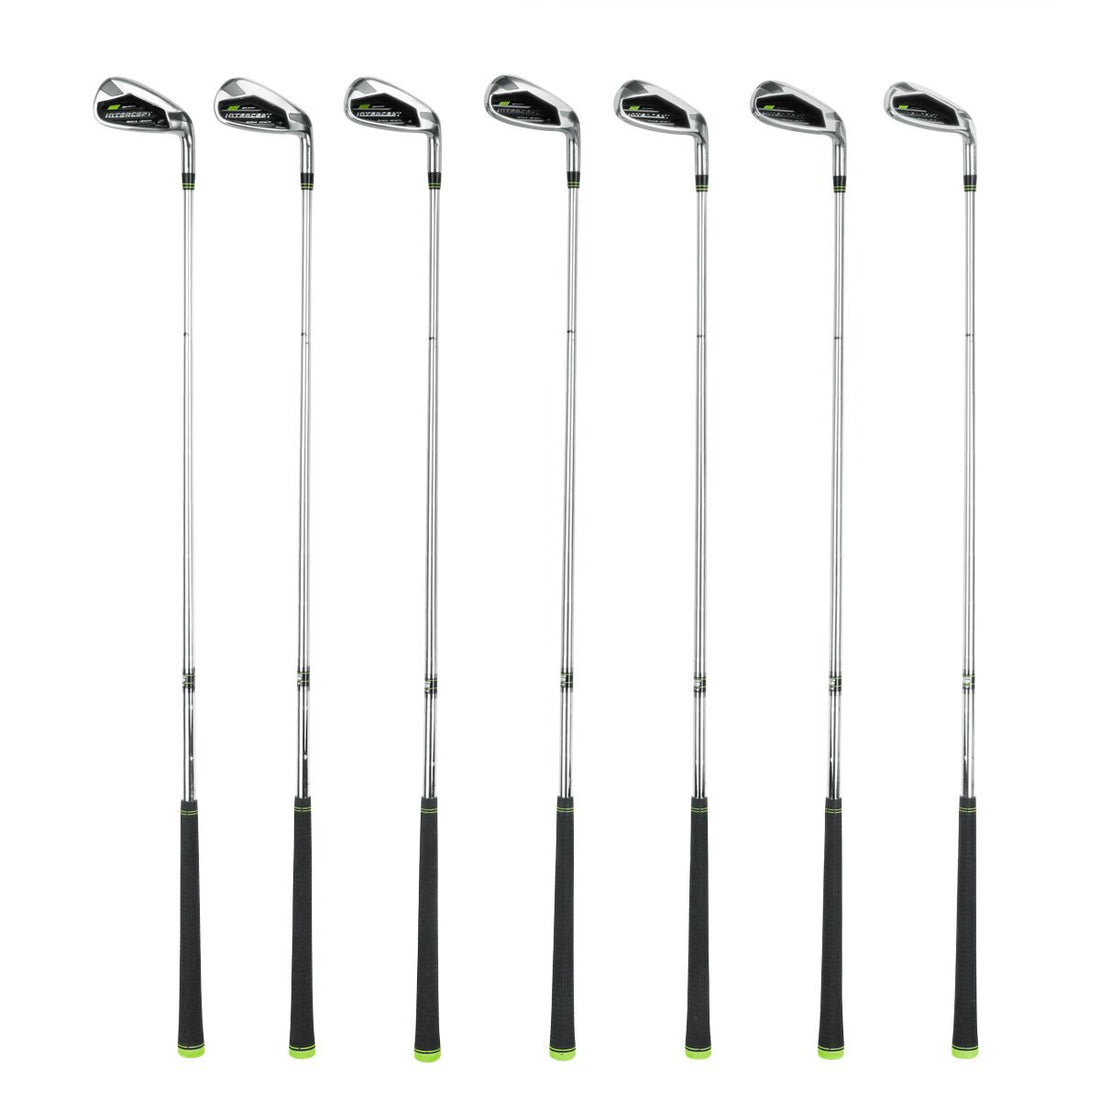 full set of Orlimar Golf Intercept Single Length Irons